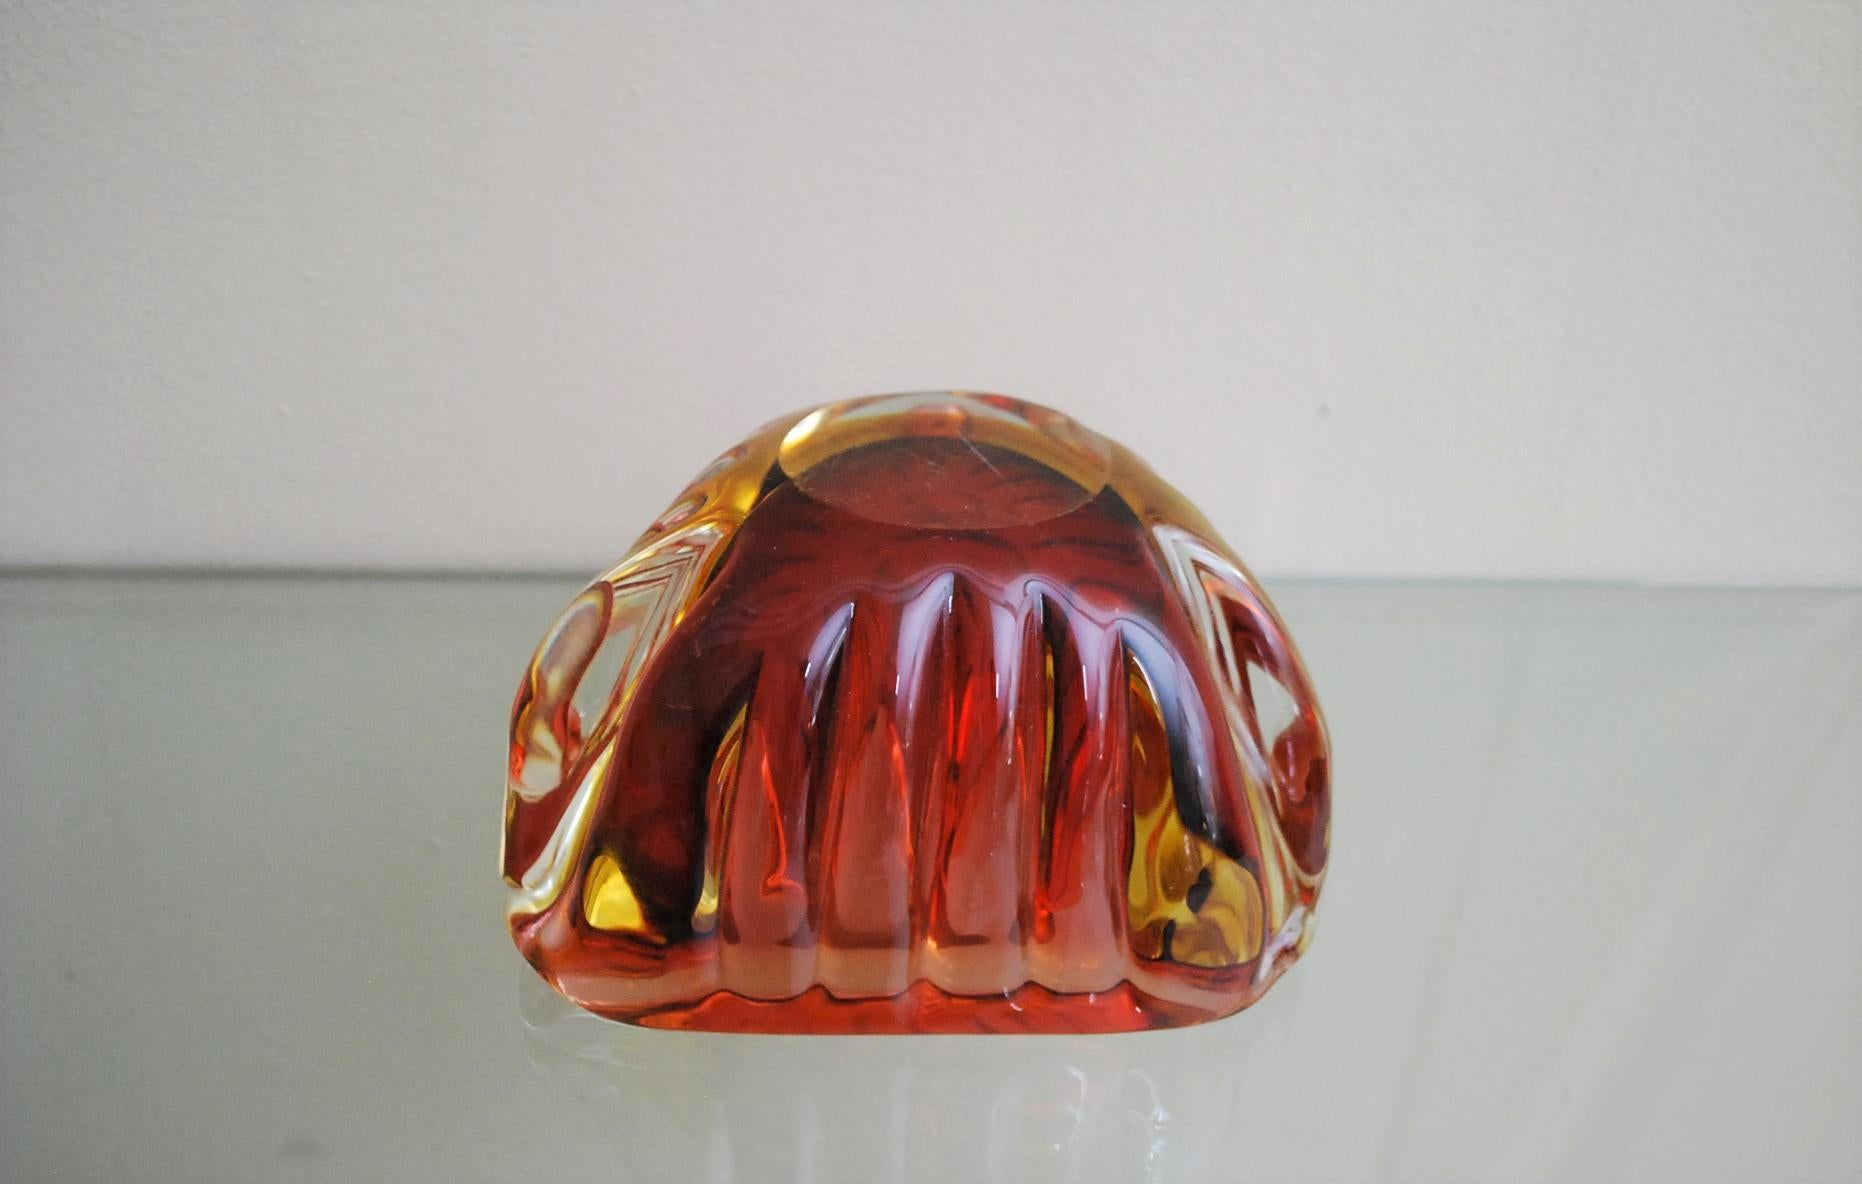 Murano Glass Ashtray Decorative Bowl Flavio Poli Midcentury Italian Design 1970s For Sale 6